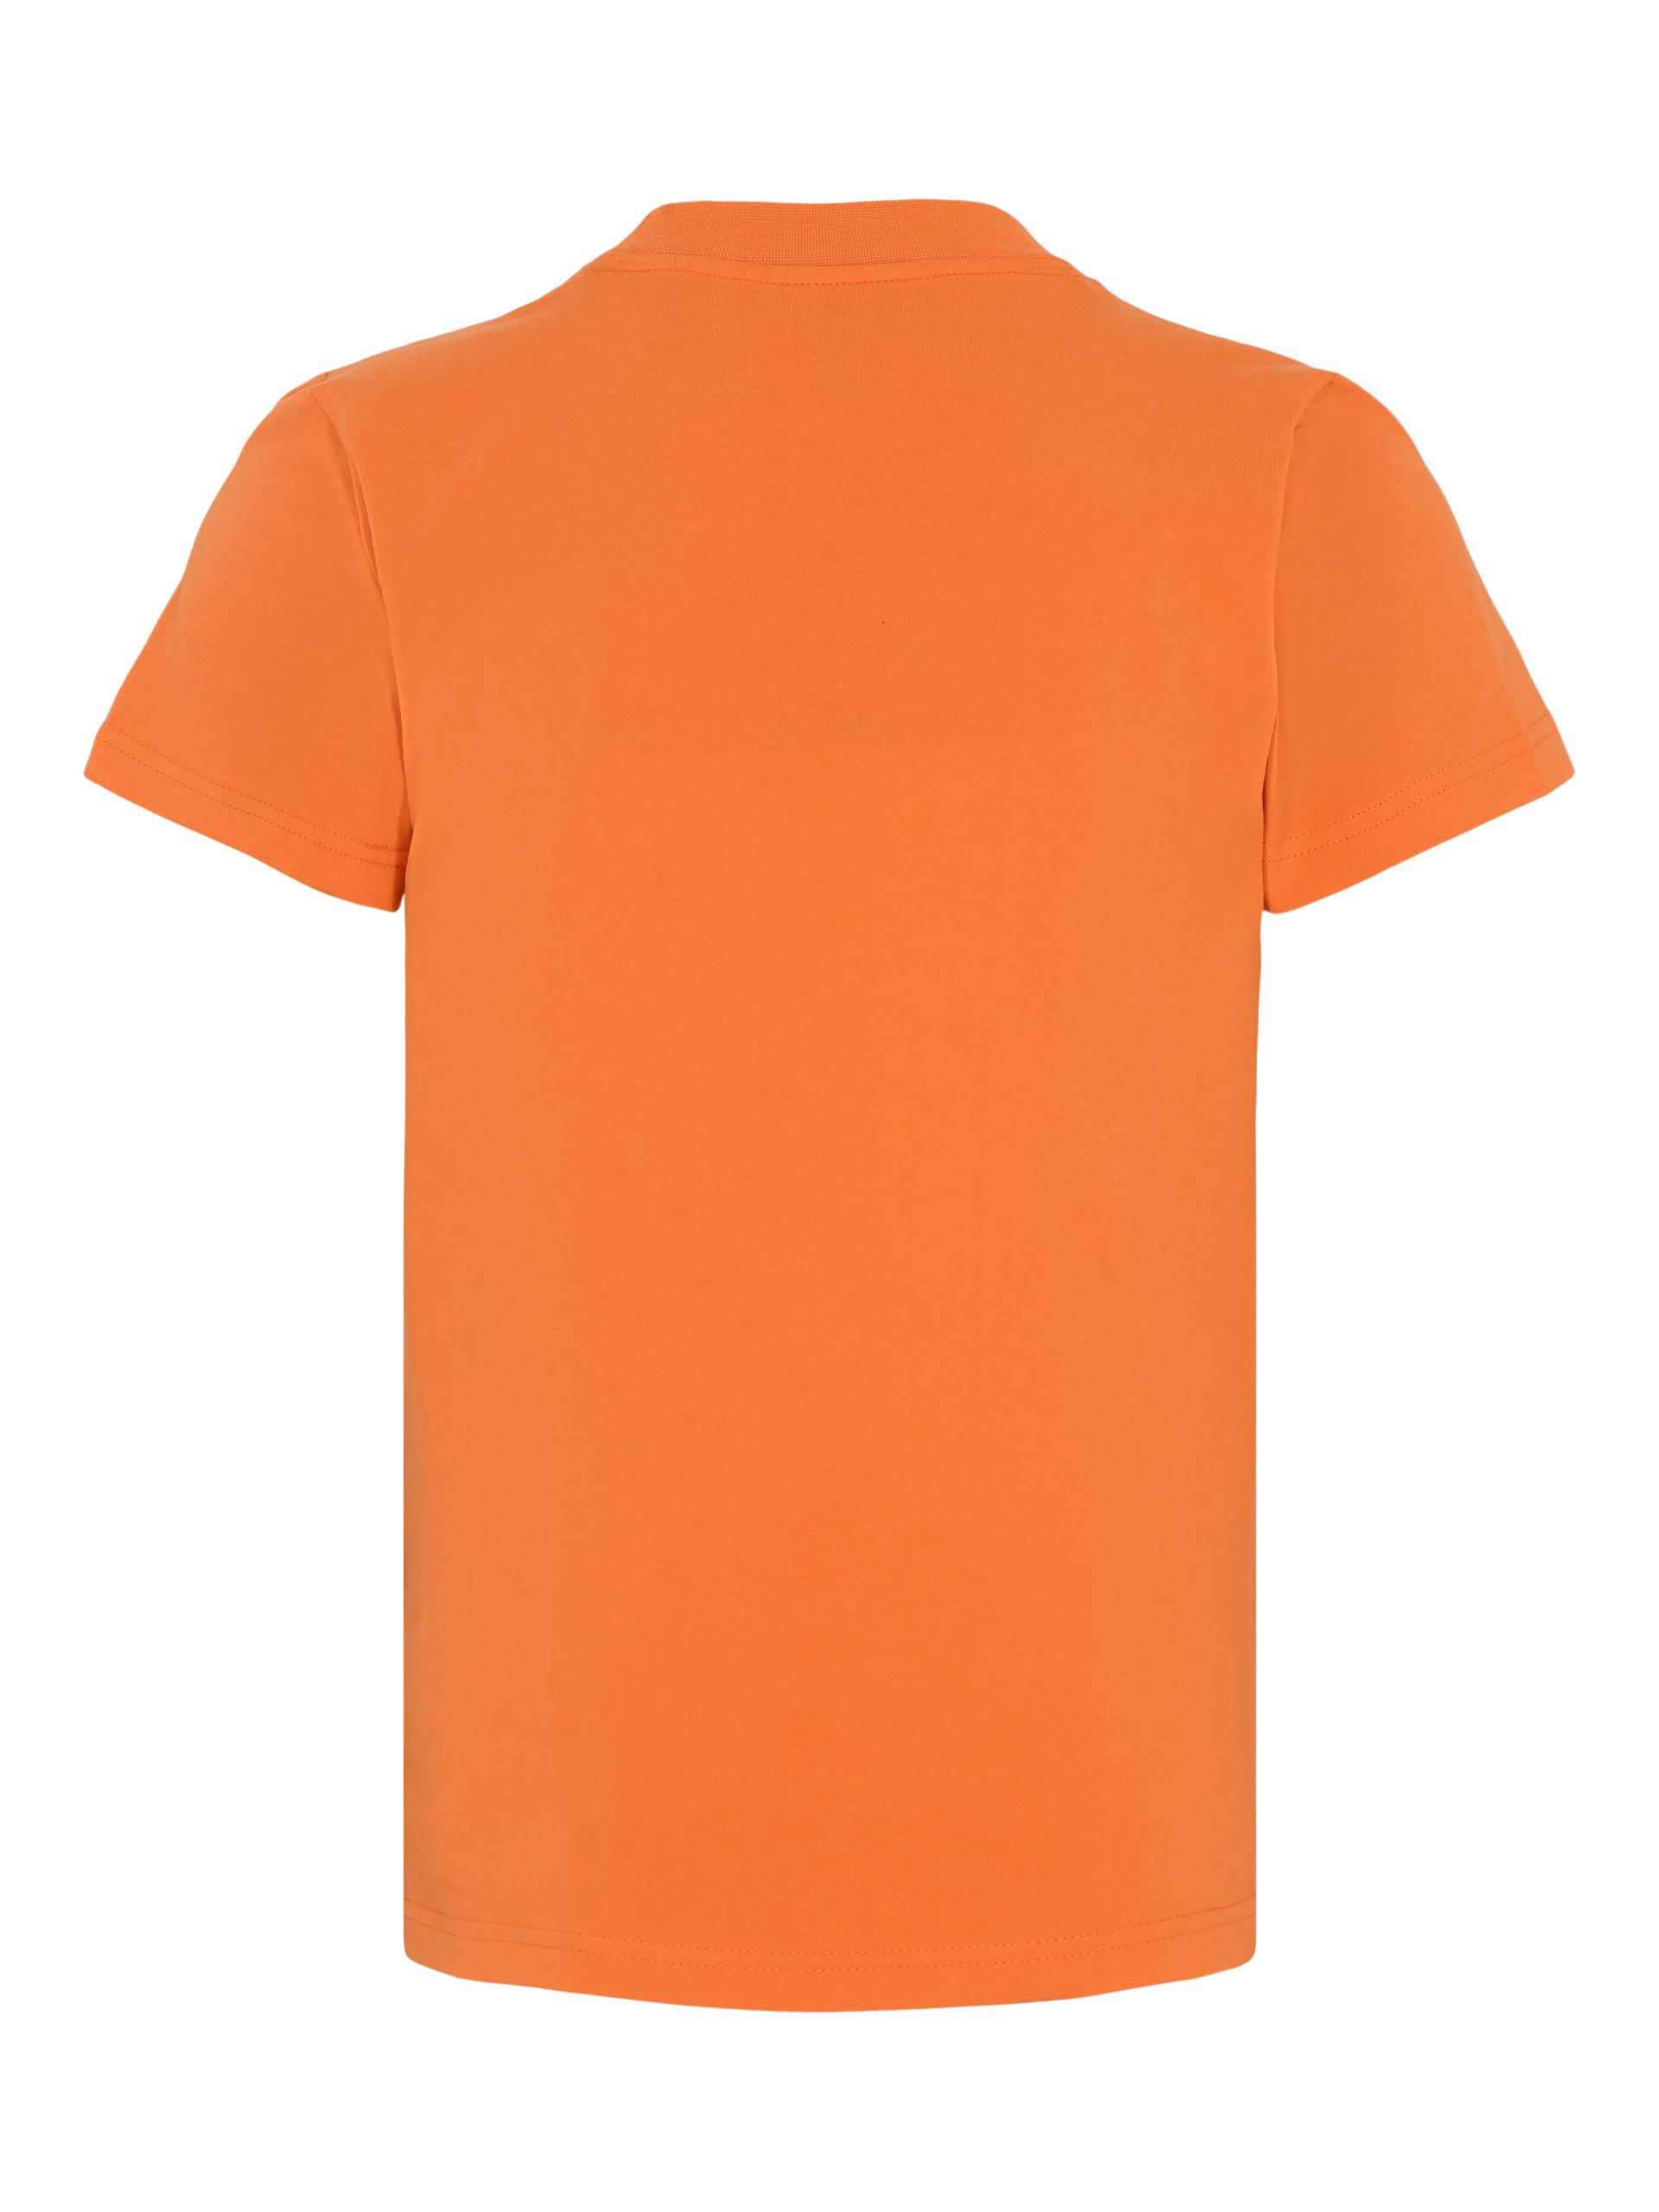 Automobili Lamborghini t-shirt Orange